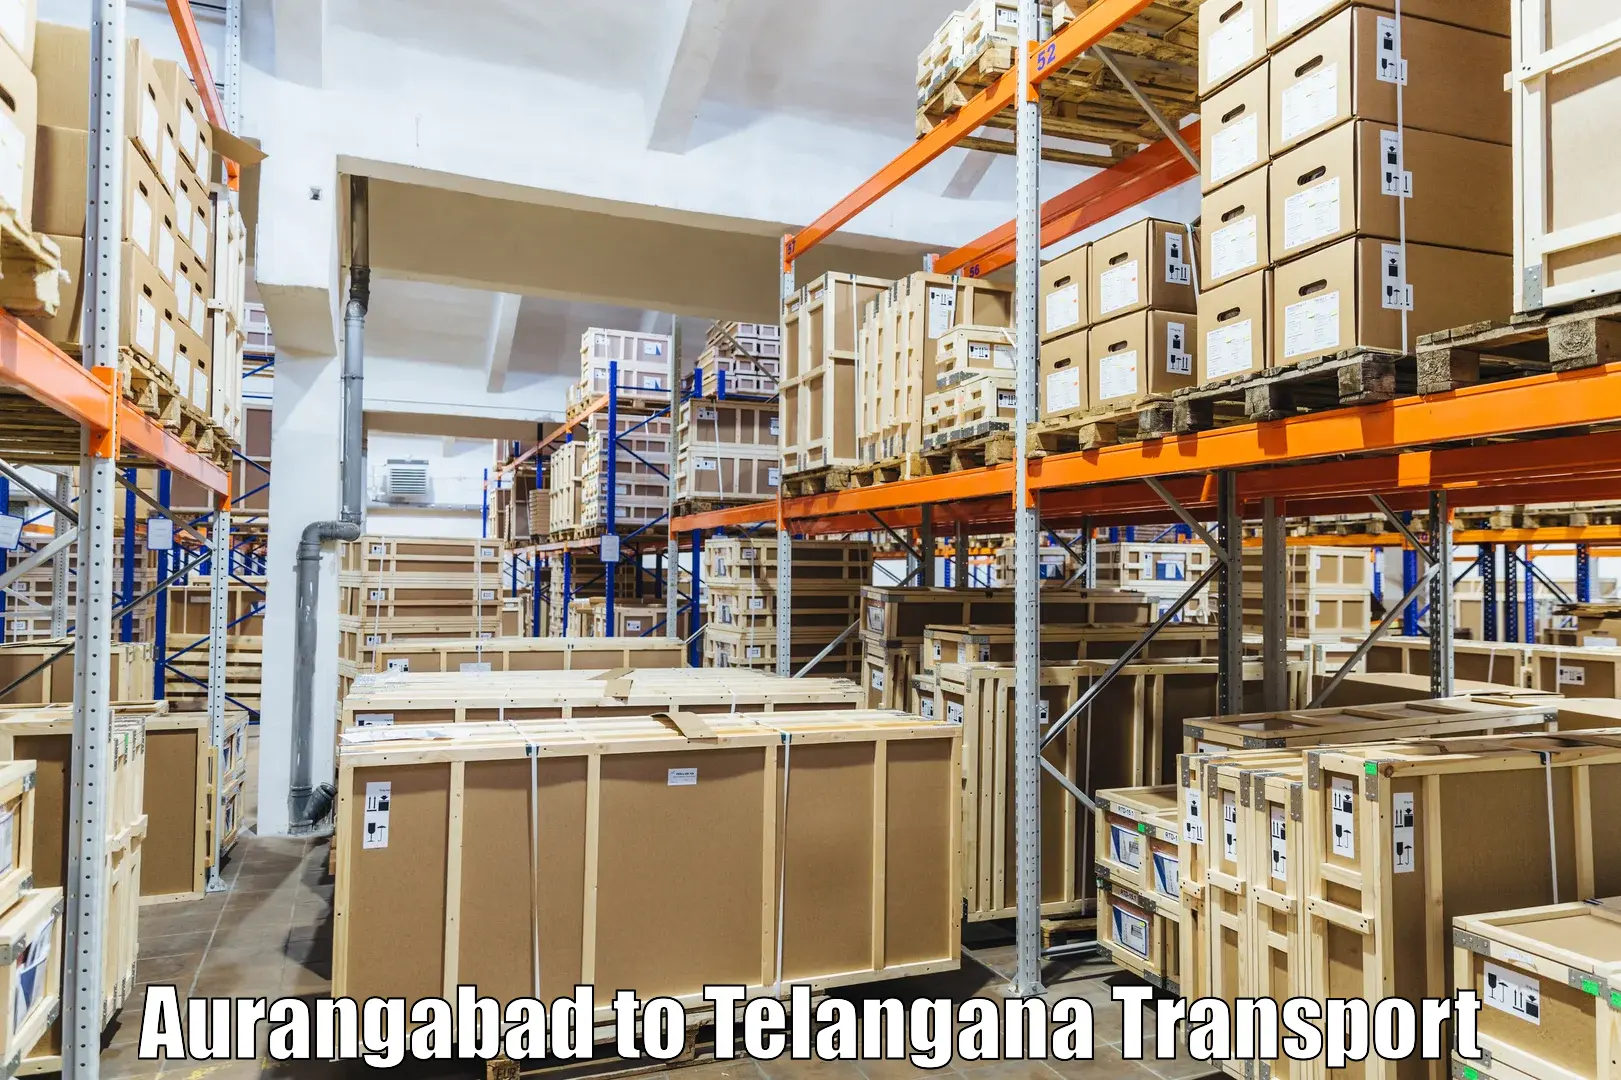 Air cargo transport services Aurangabad to Thirumalagiri